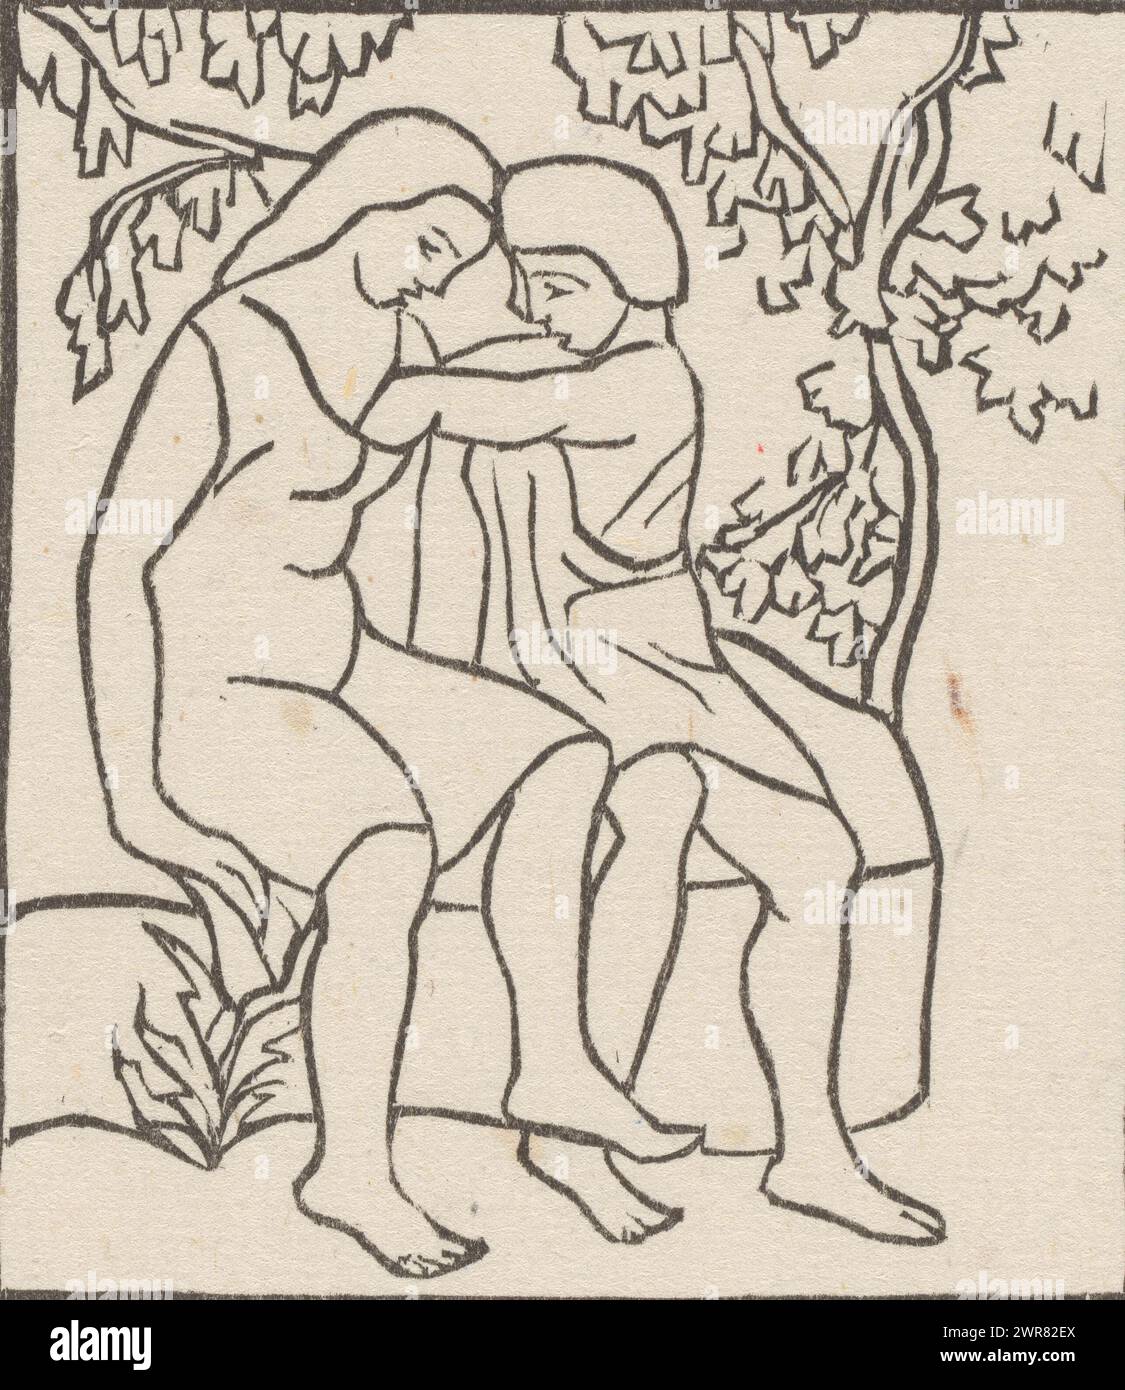 Daphnis sort une cigale de la robe de Chloé, Daphnis avec la main dans le sein de Chloé pour en retirer une ciale (titre original), imprimeur : Aristide Maillol, 1937, papier, hauteur 197 mm × largeur 131 mm, tirage Banque D'Images